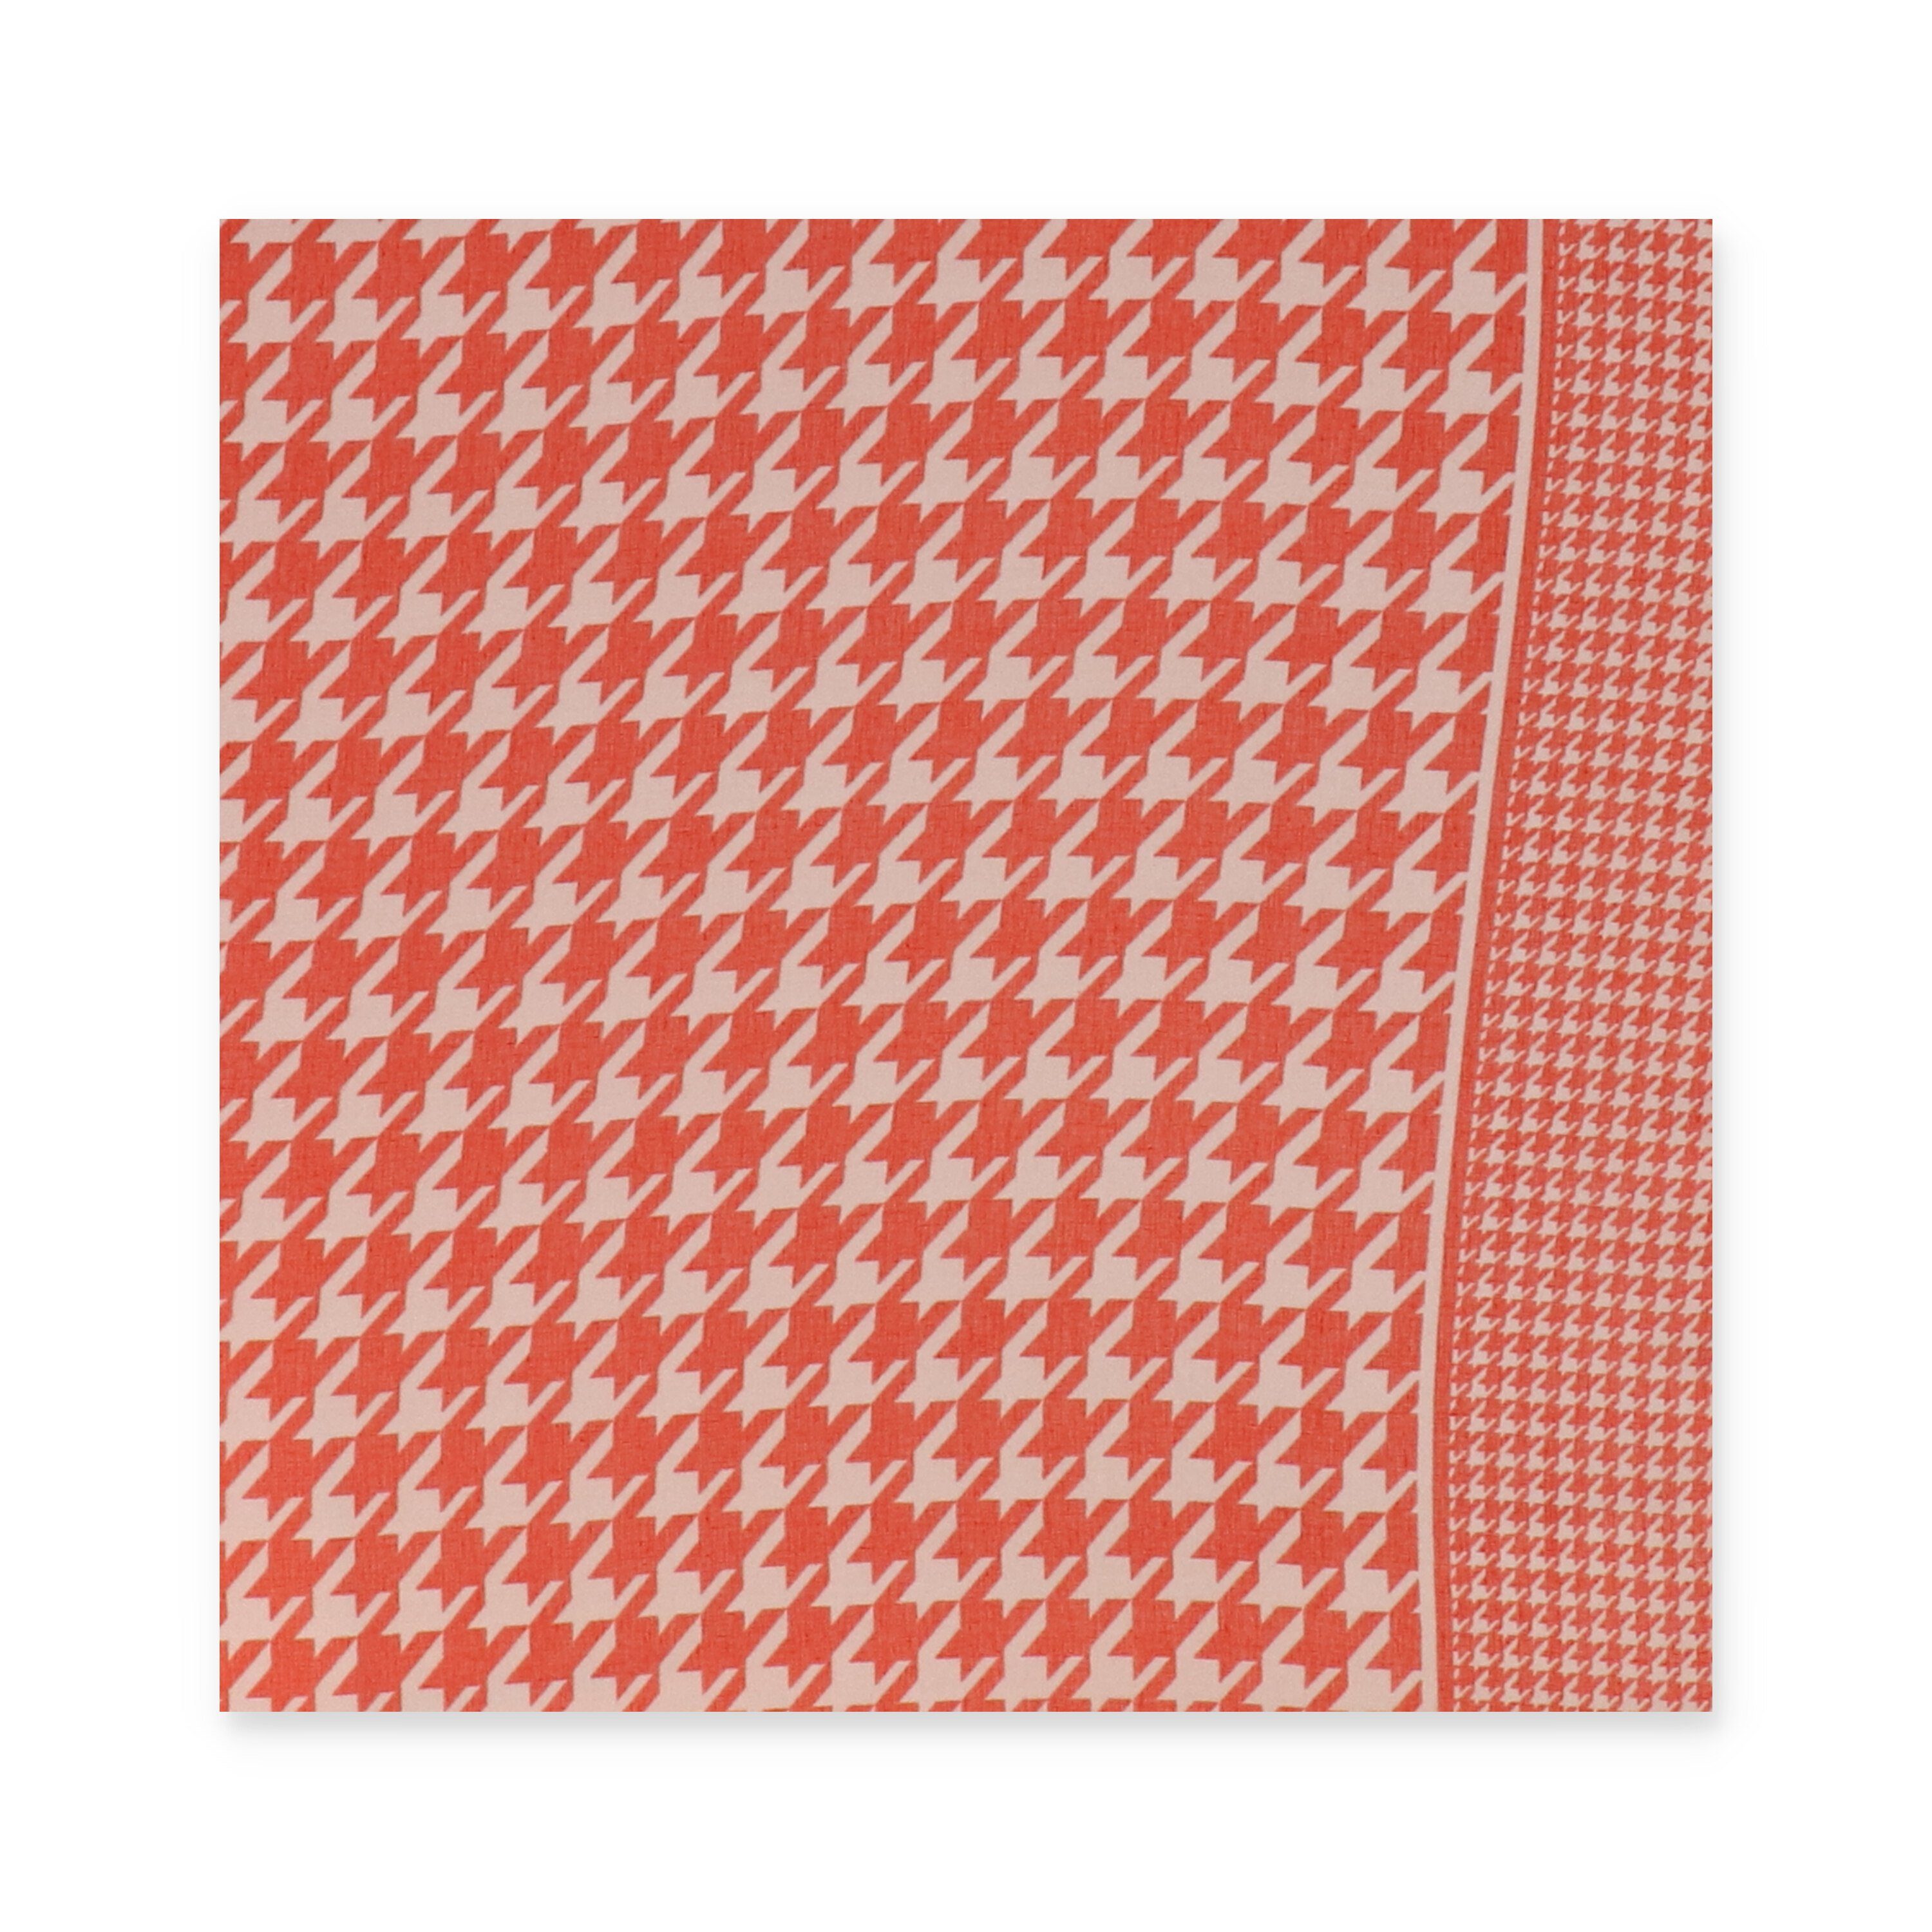 halsüberkopf Accessoires Schal, Hahnentritt-Muster Schal mit rot Modeschal